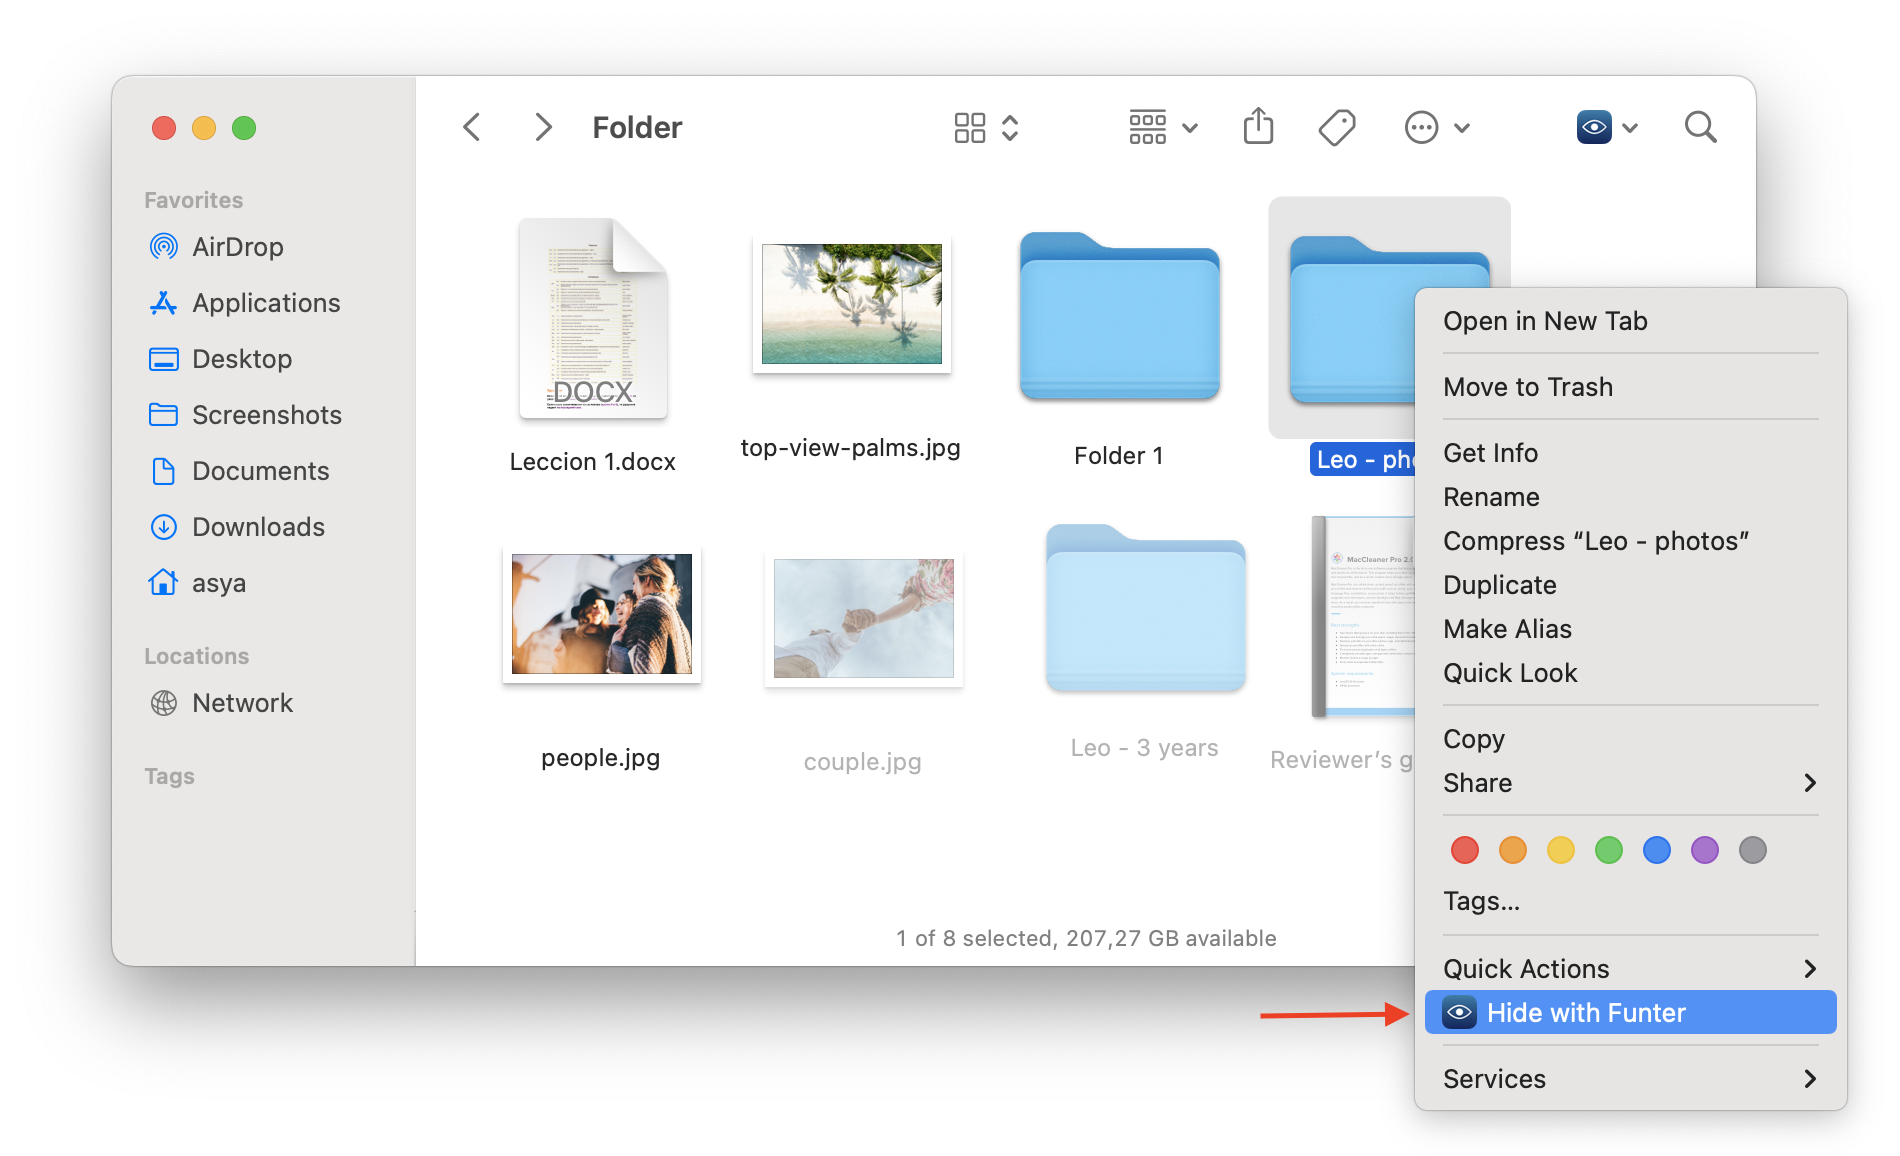 mac hide folders